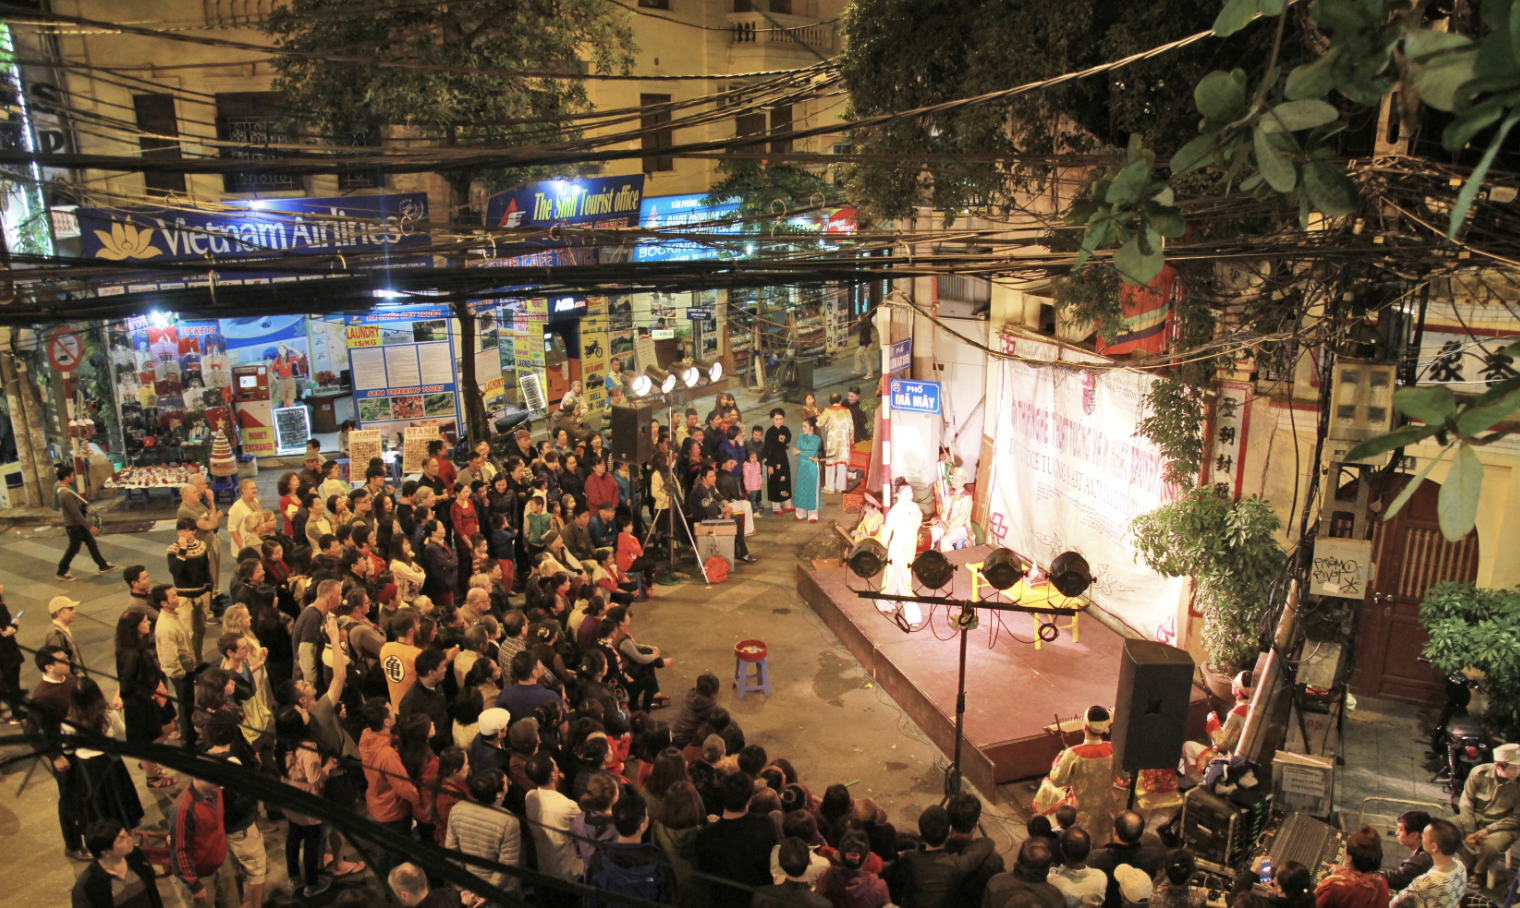 河内古街的传统艺术表演场所吸引了众多人民和外国游客前来观赏。